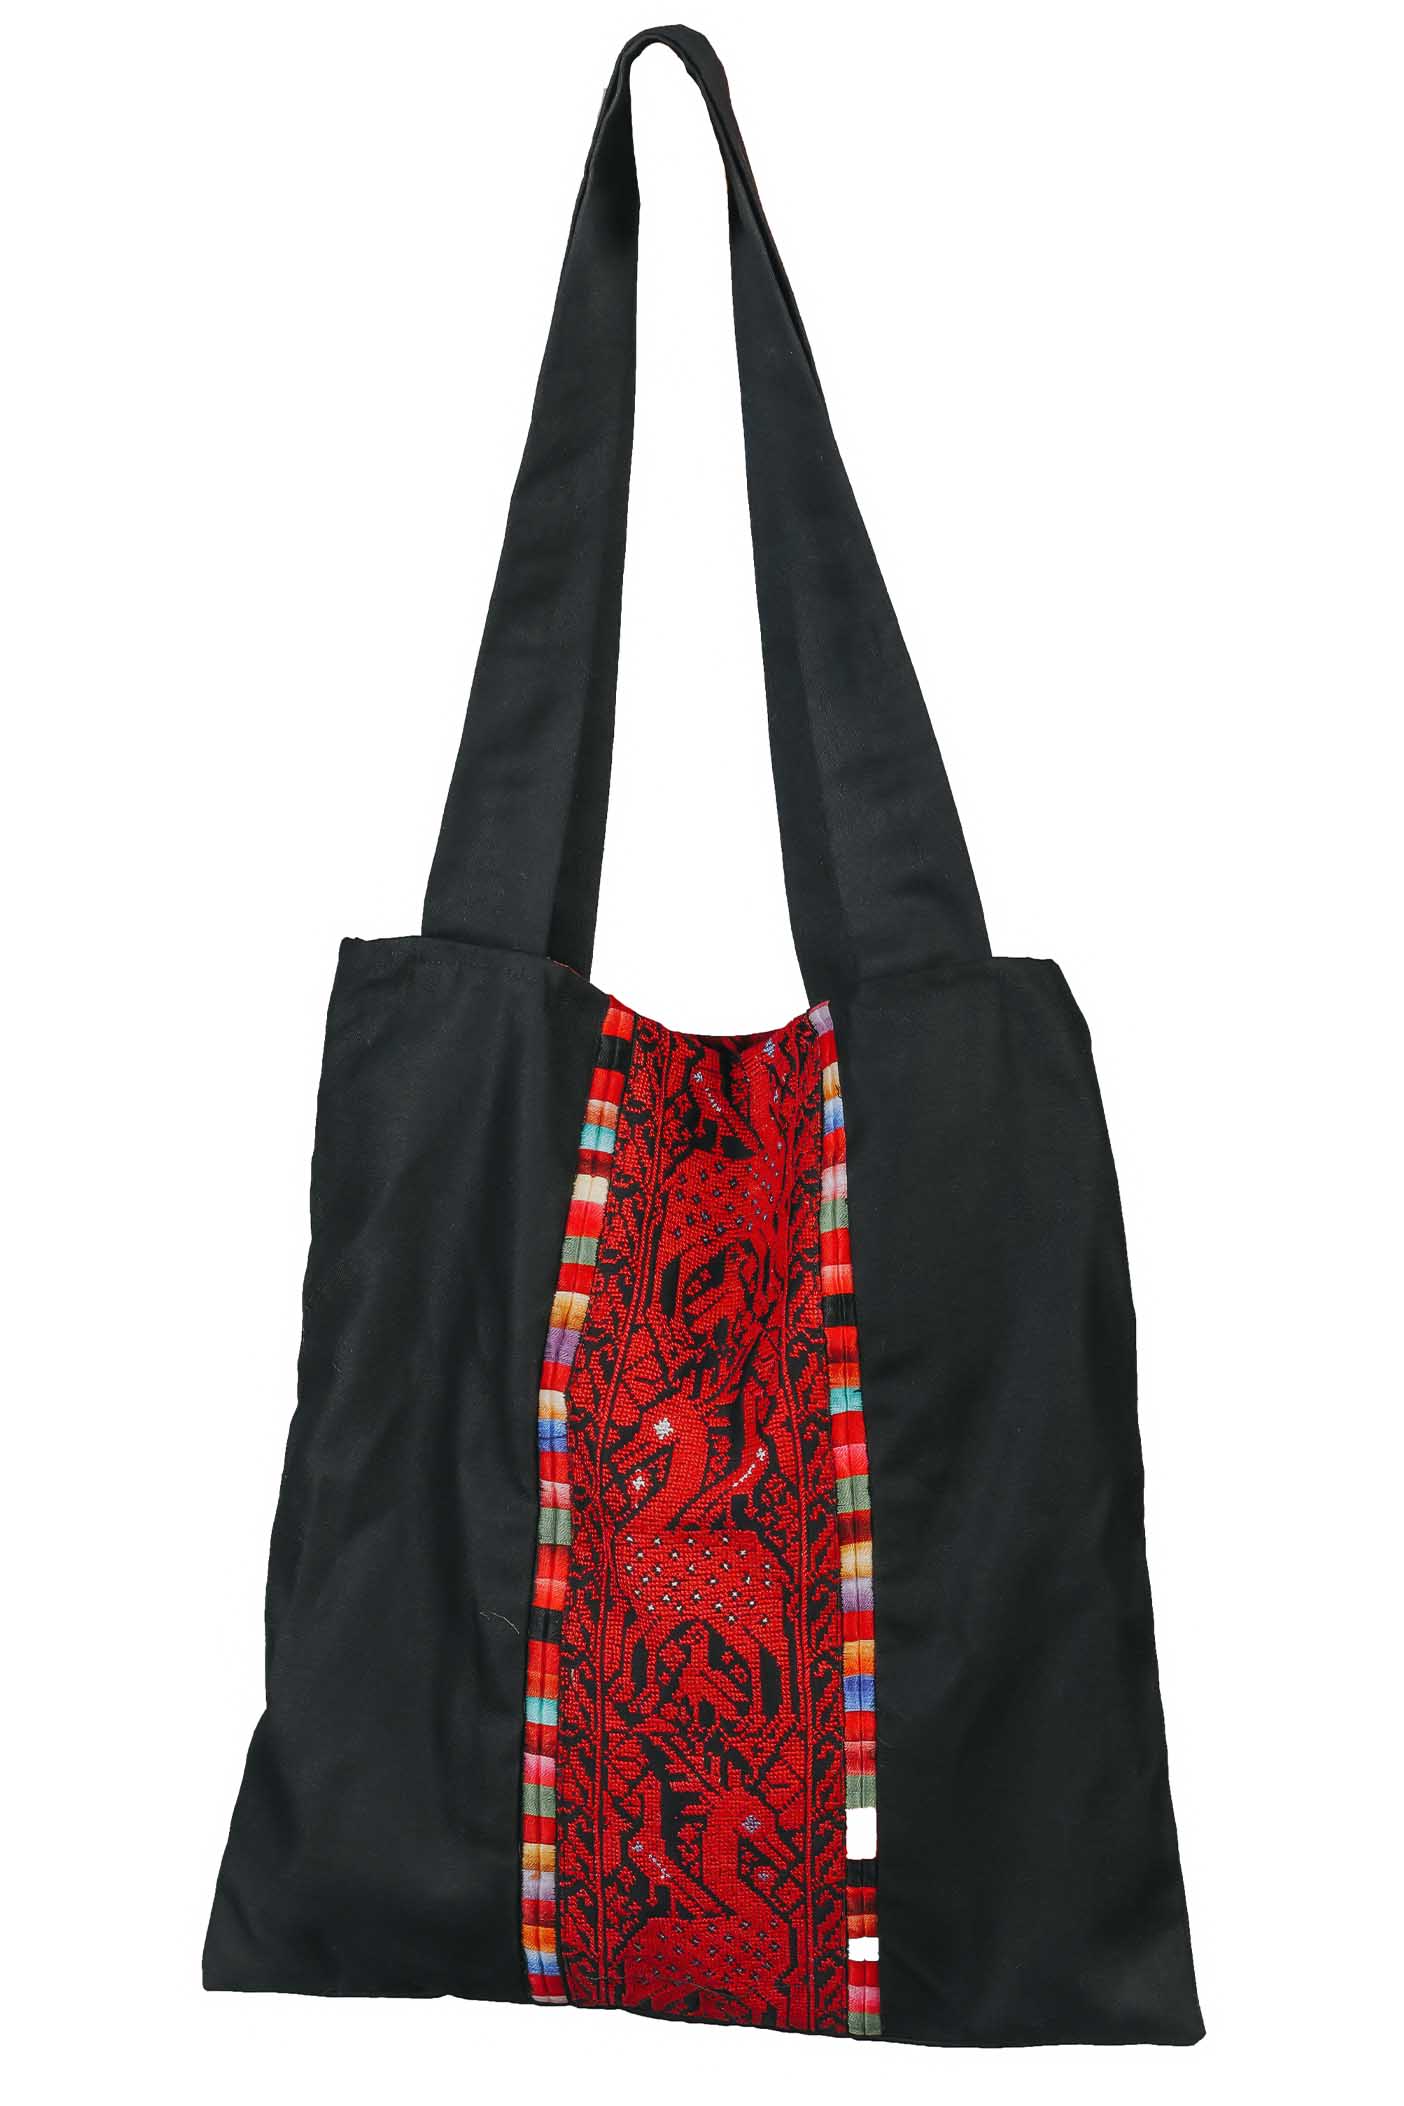 Yemina's Tote Bag